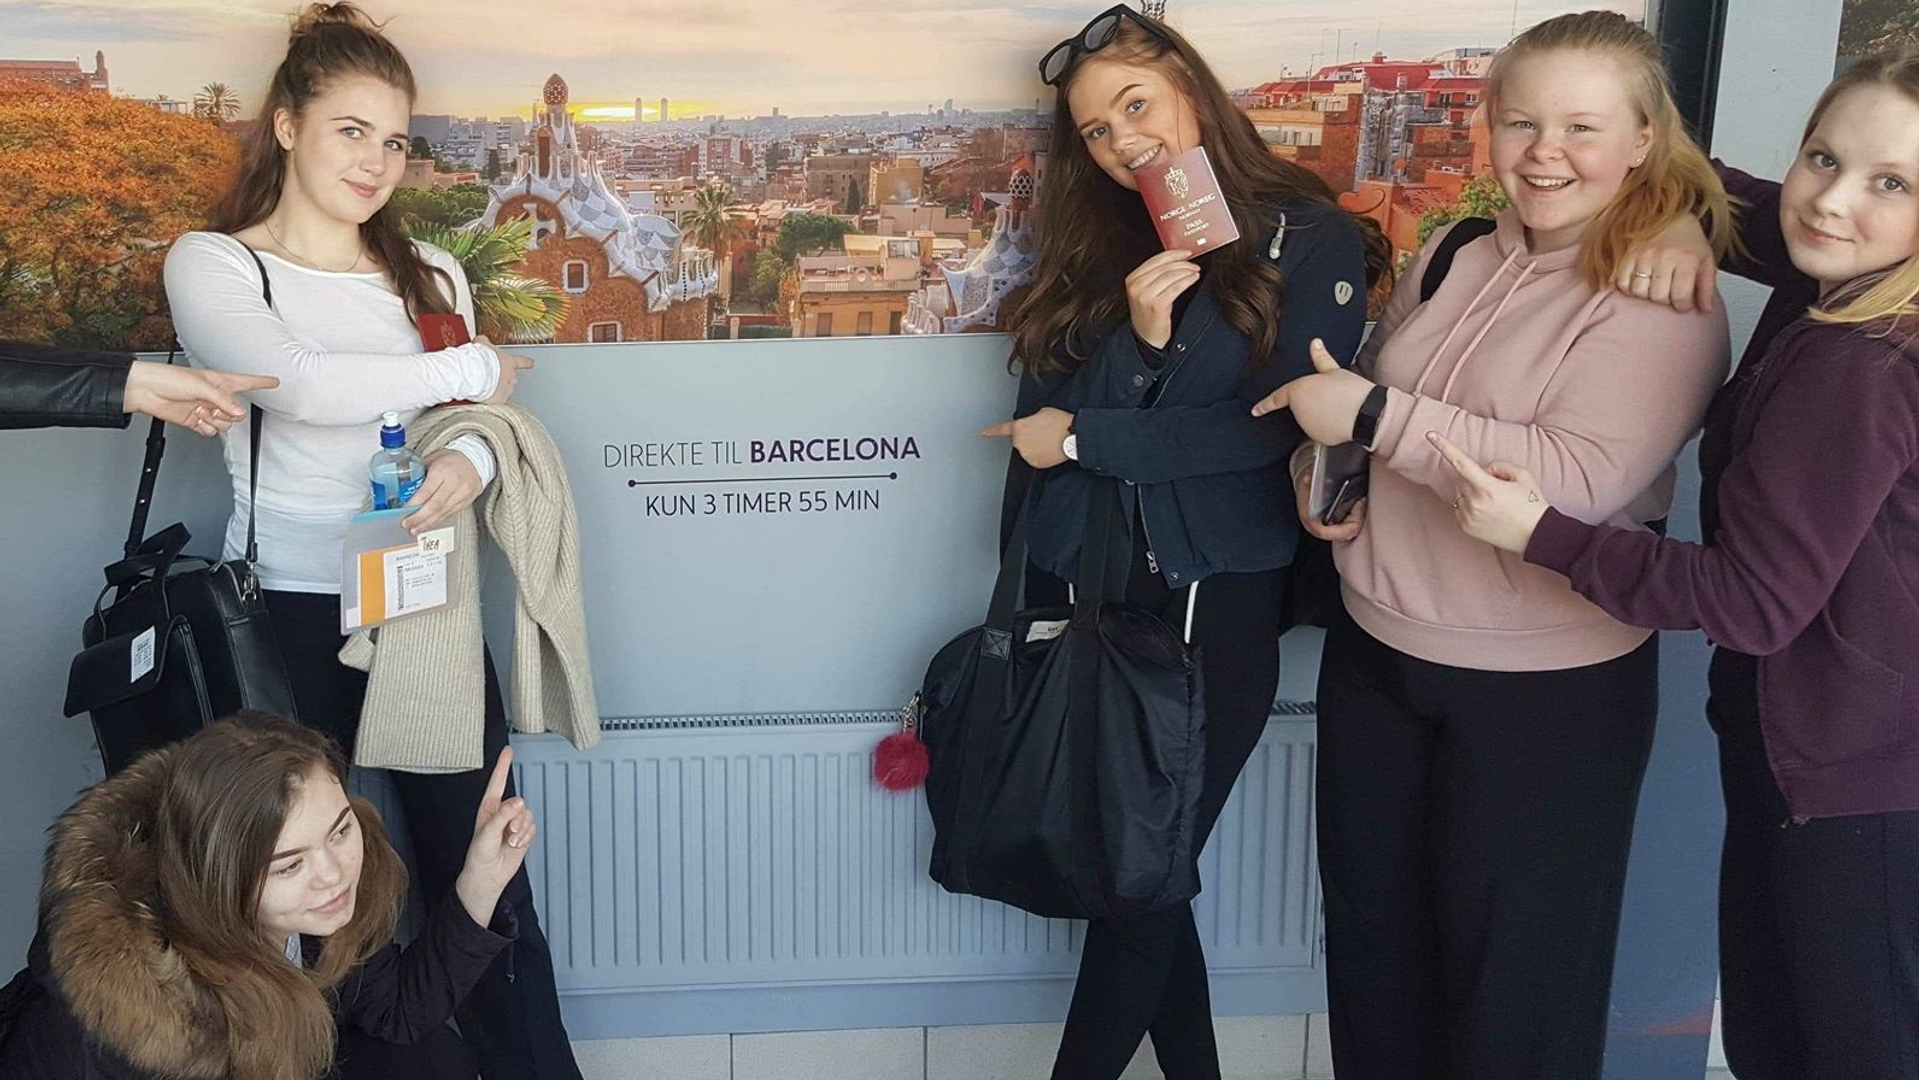 Fire unge jenter står foran en plakat med bilde av Barcelona, mens de peker på teksten "Direkte til Barcelona - Kun 3 timer 55 min".